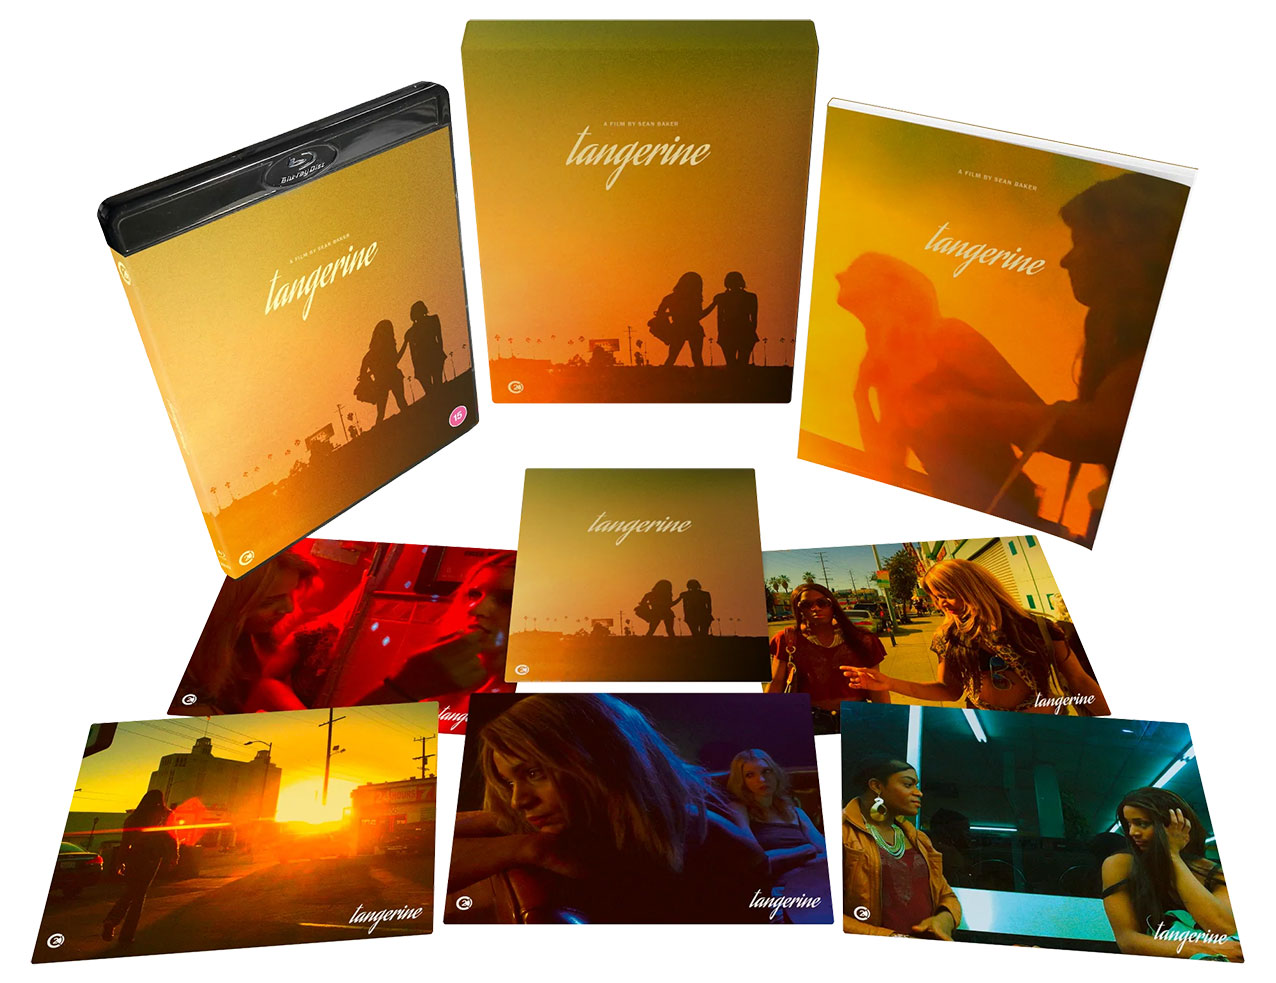 Tangerine Blu-ray pack shot